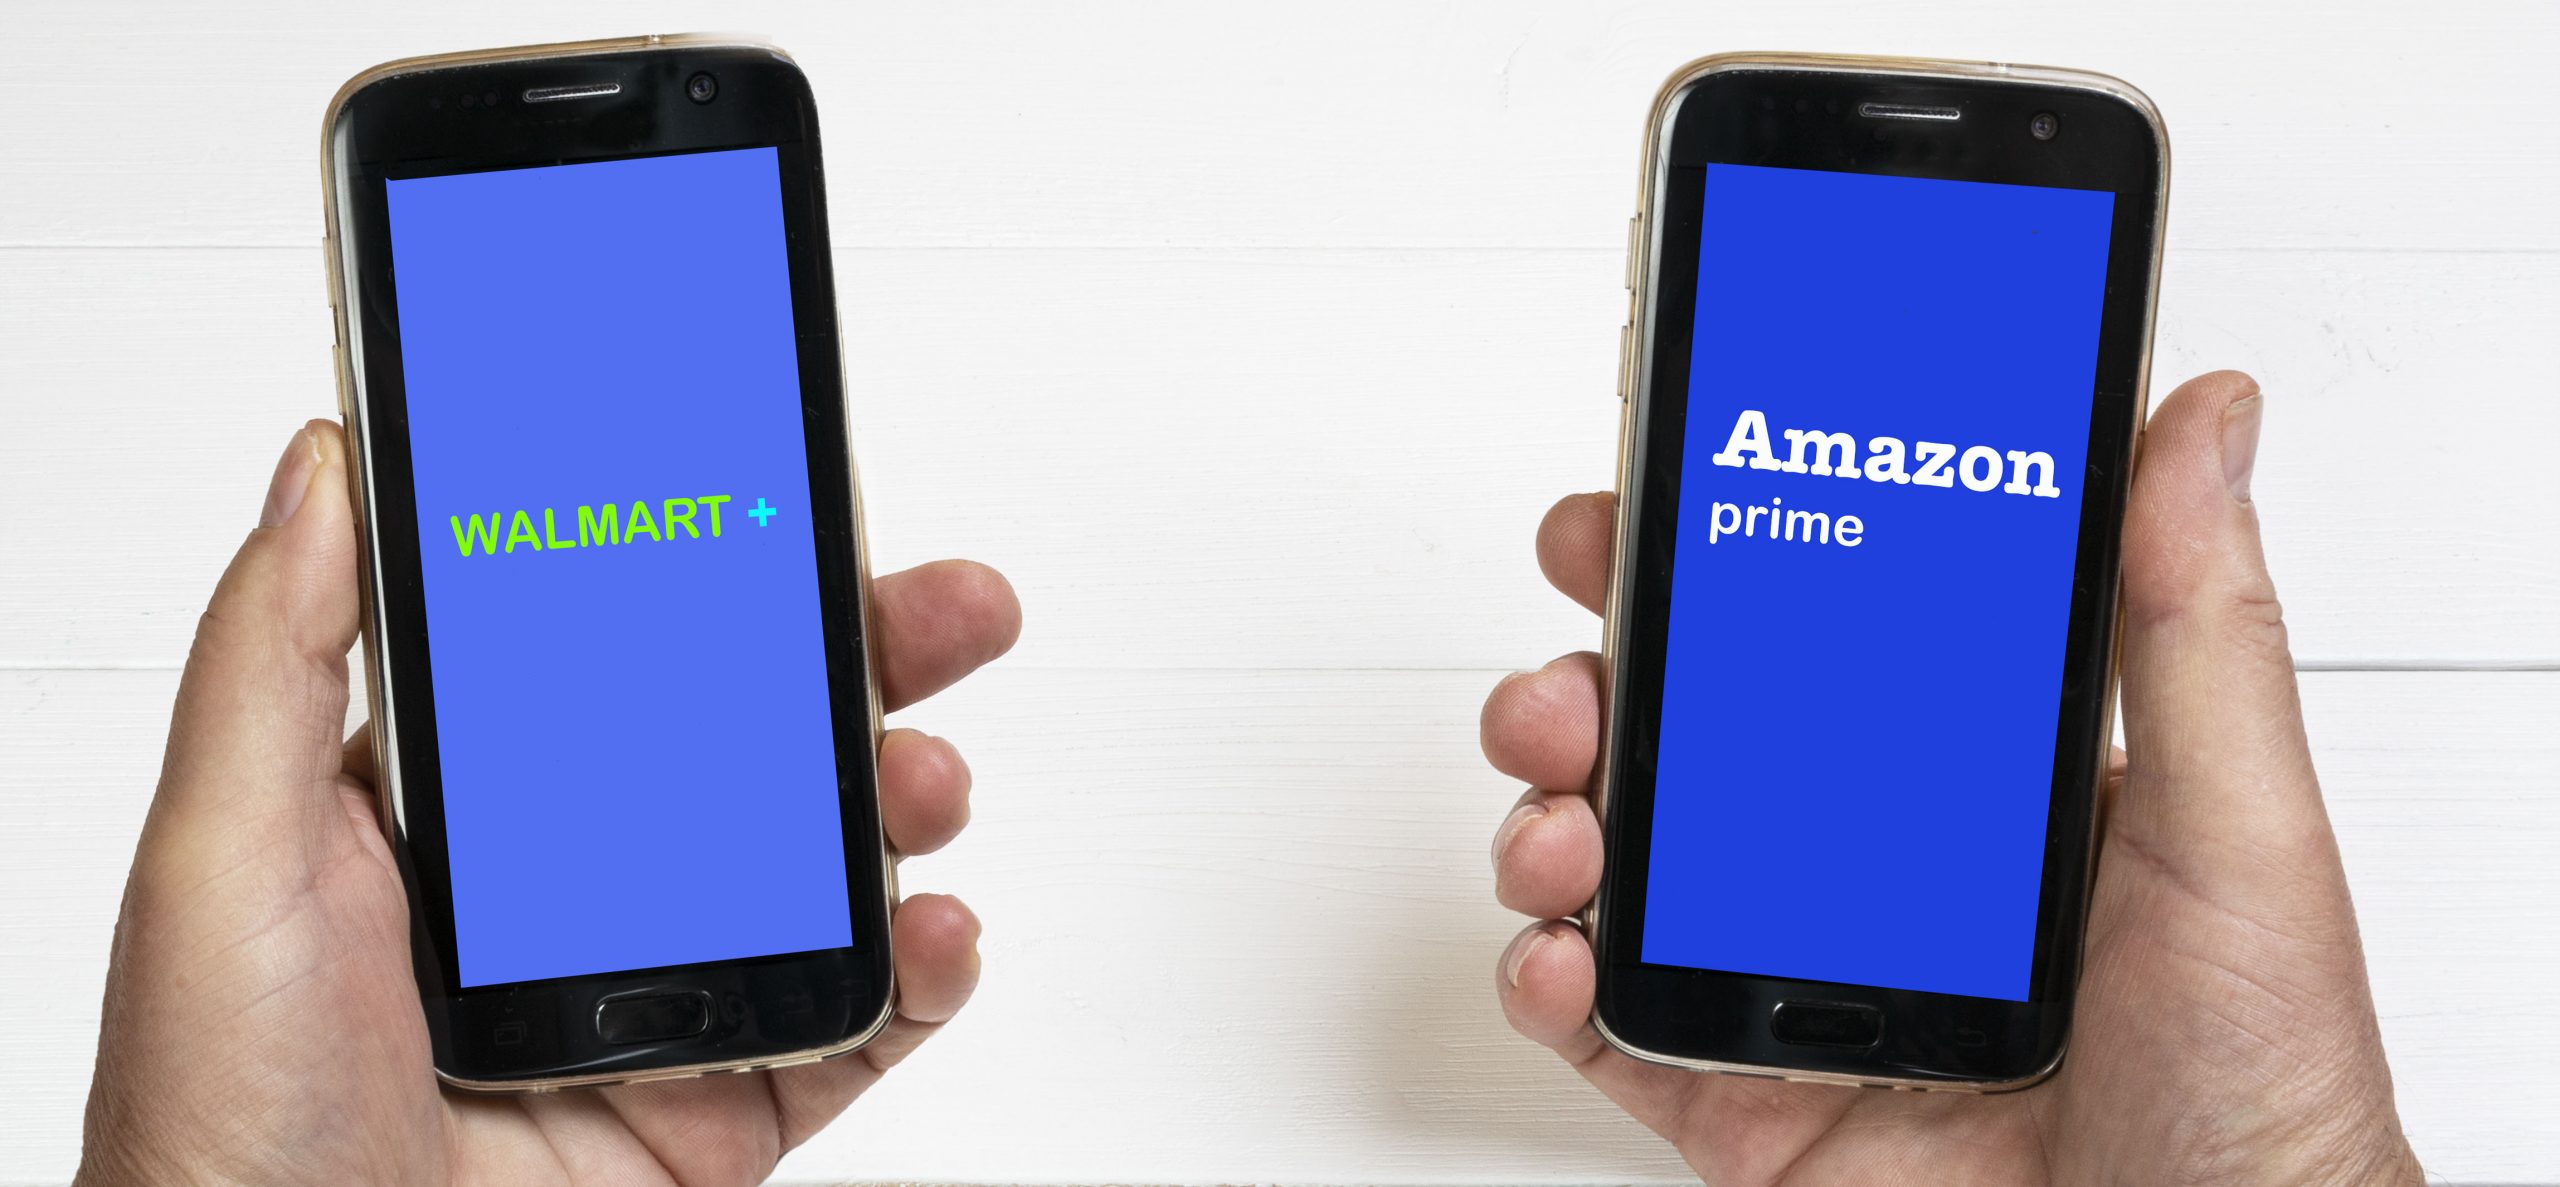 Amazon Prime vs. Walmart Plus—who will win?